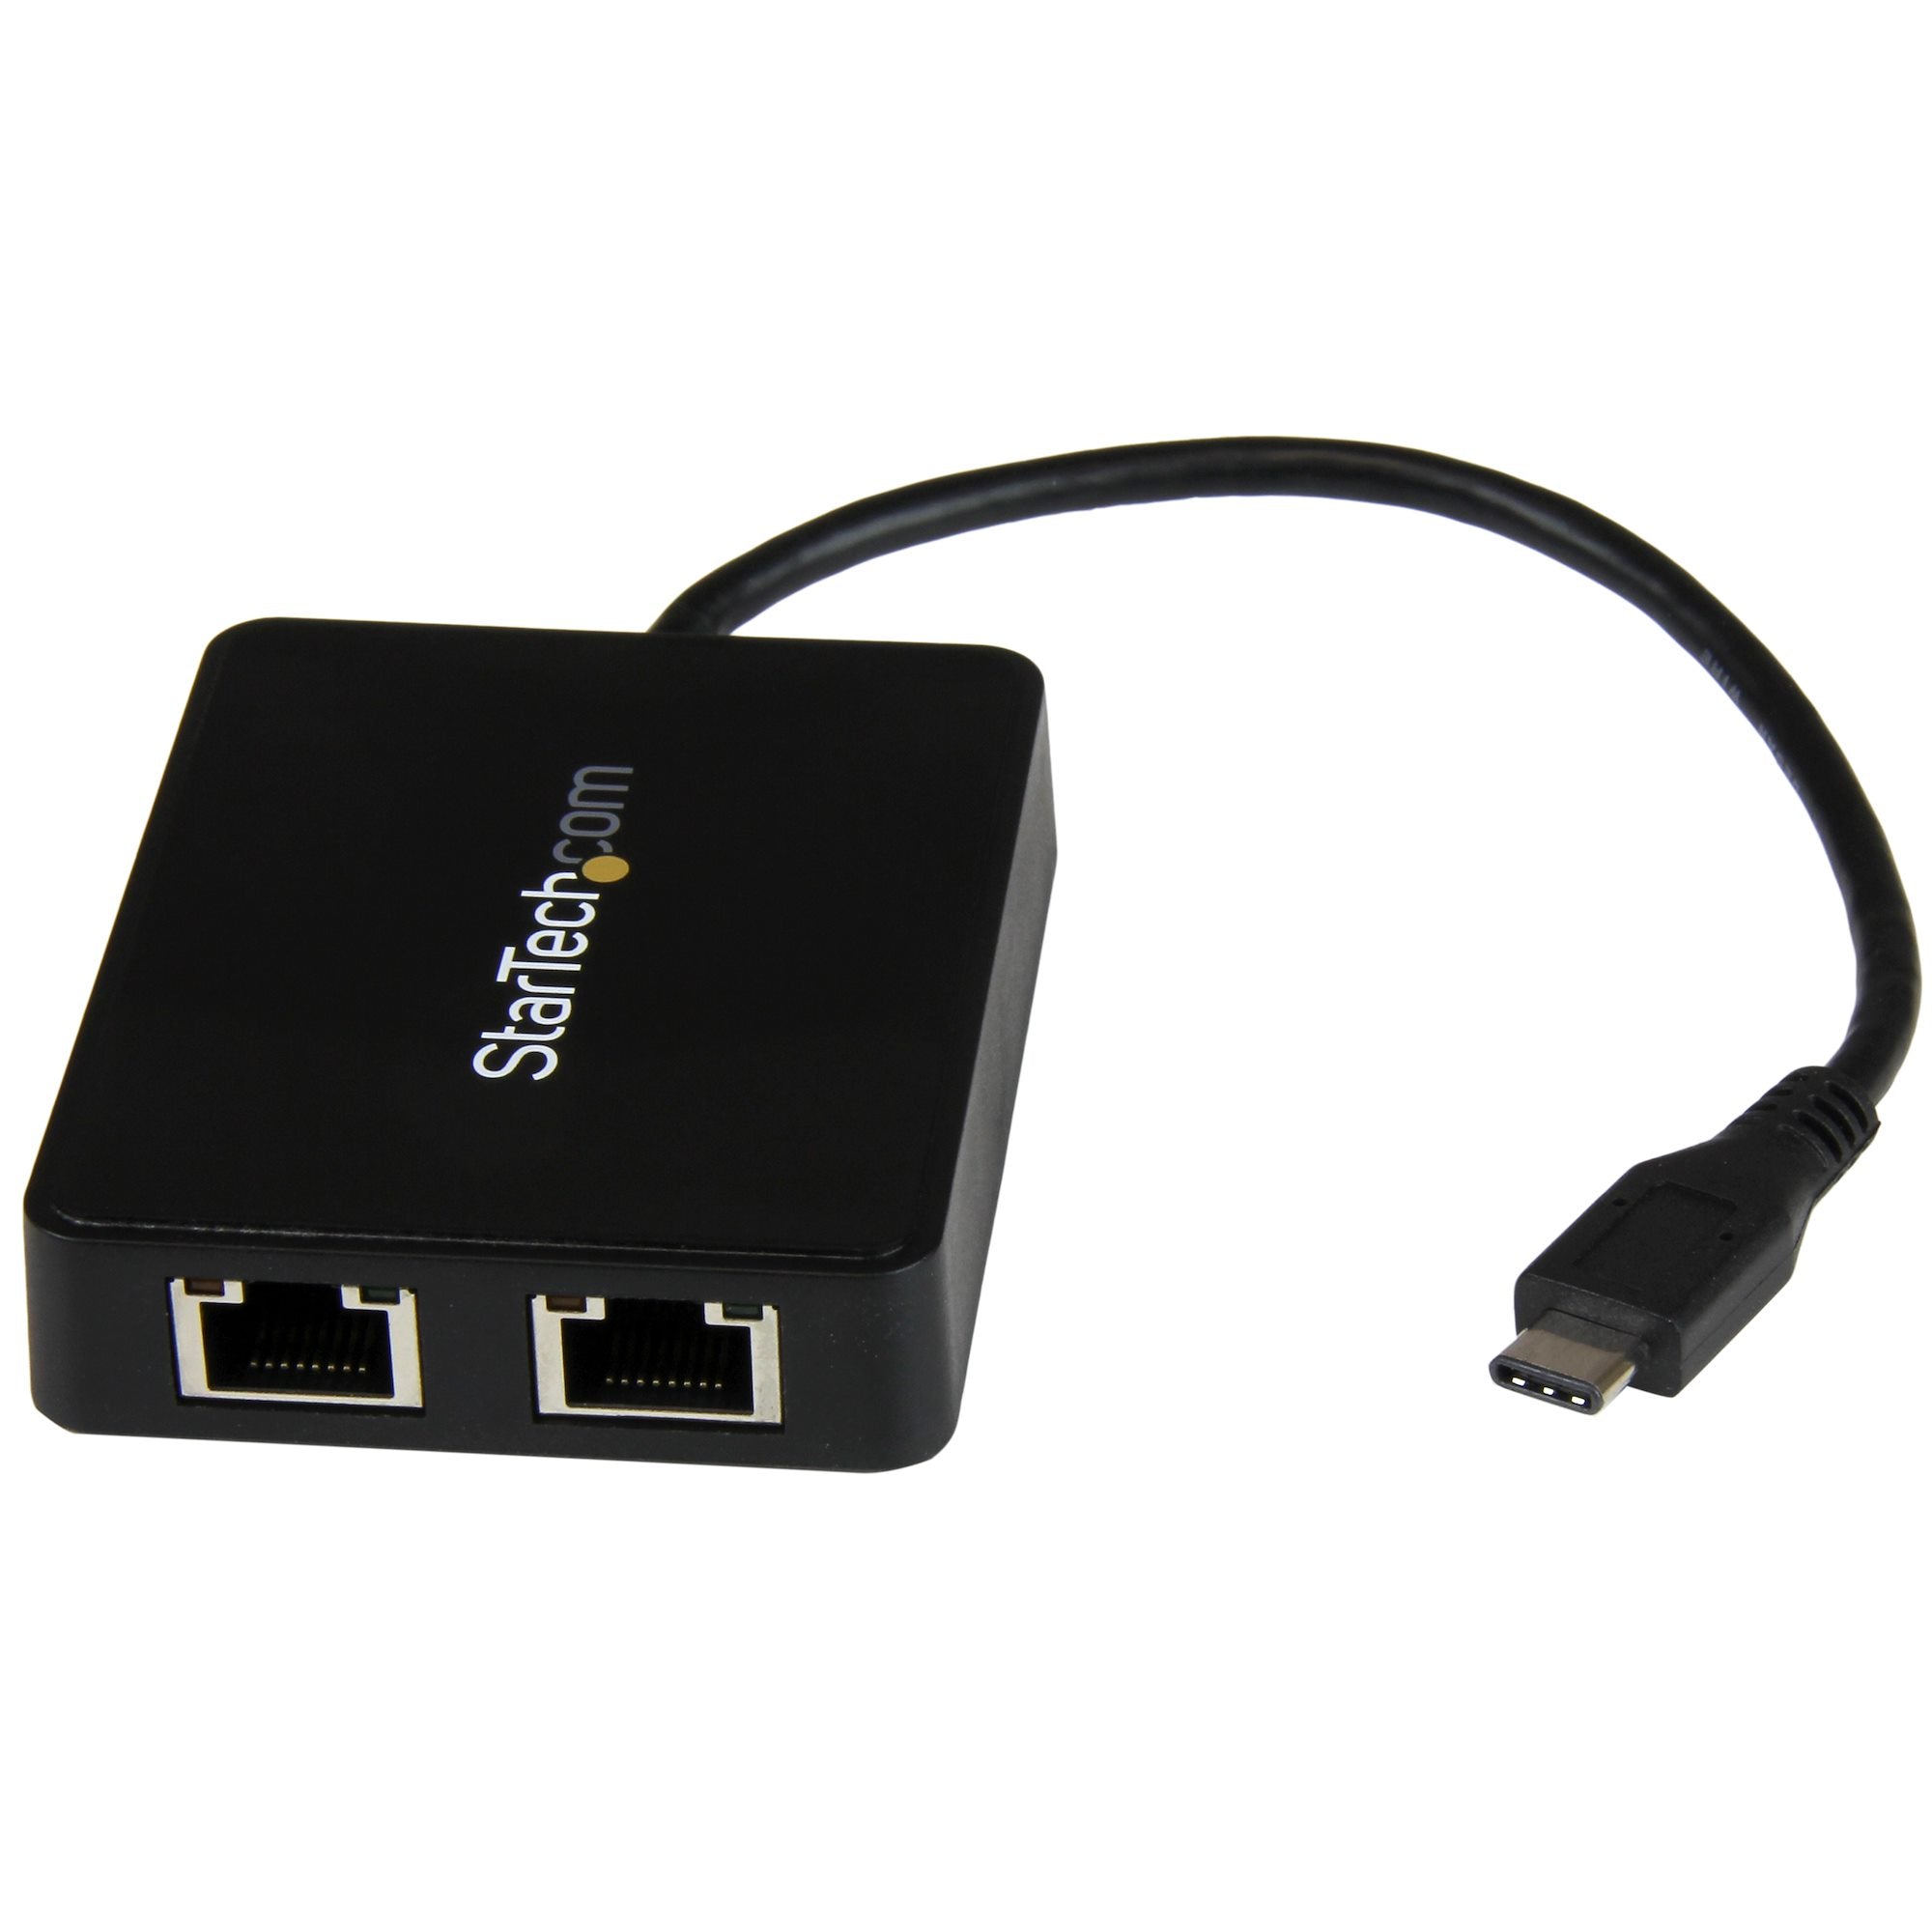 Adaptador De Red Usb-C Con Dos Puertos Ethernet Gigabit Y Puerto Adicional Usb (Type-A) Modelo Us1gc301au2r